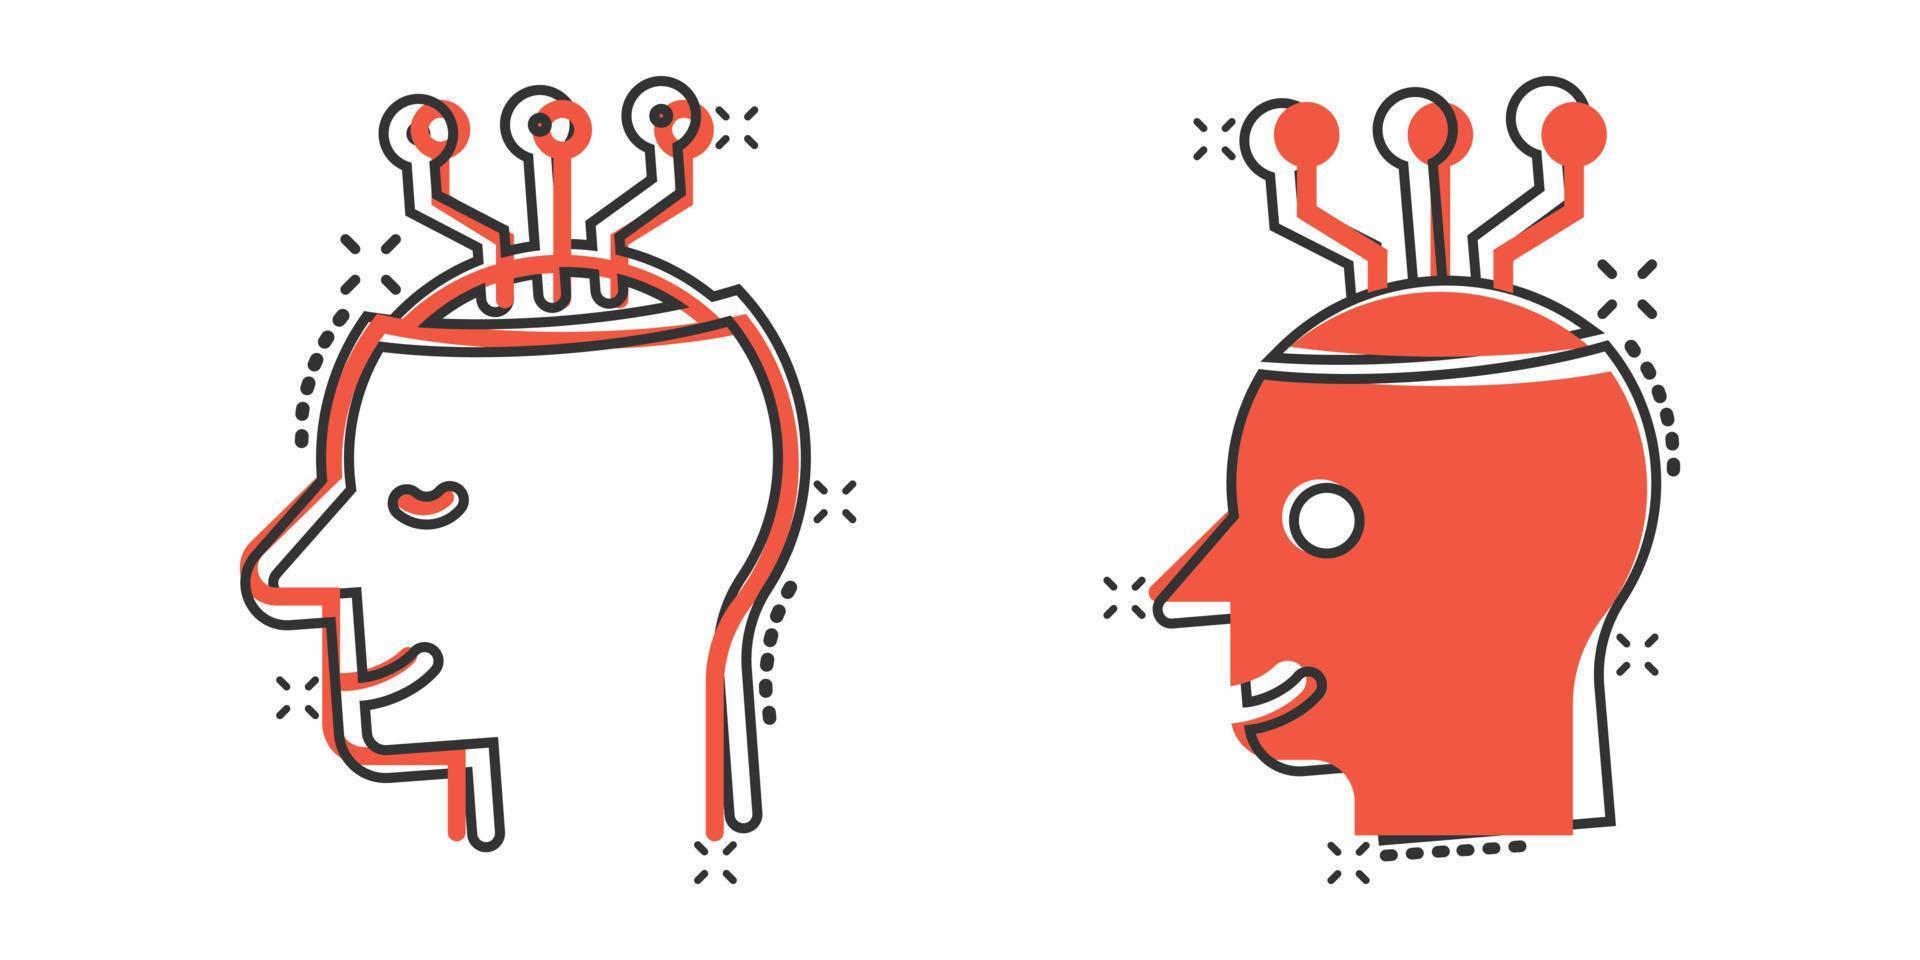 ícone de consciência mental em estilo cômico. ideia ilustração em vetor desenho humano sobre fundo branco isolado. conceito de negócio de efeito de respingo de cérebro de cliente.